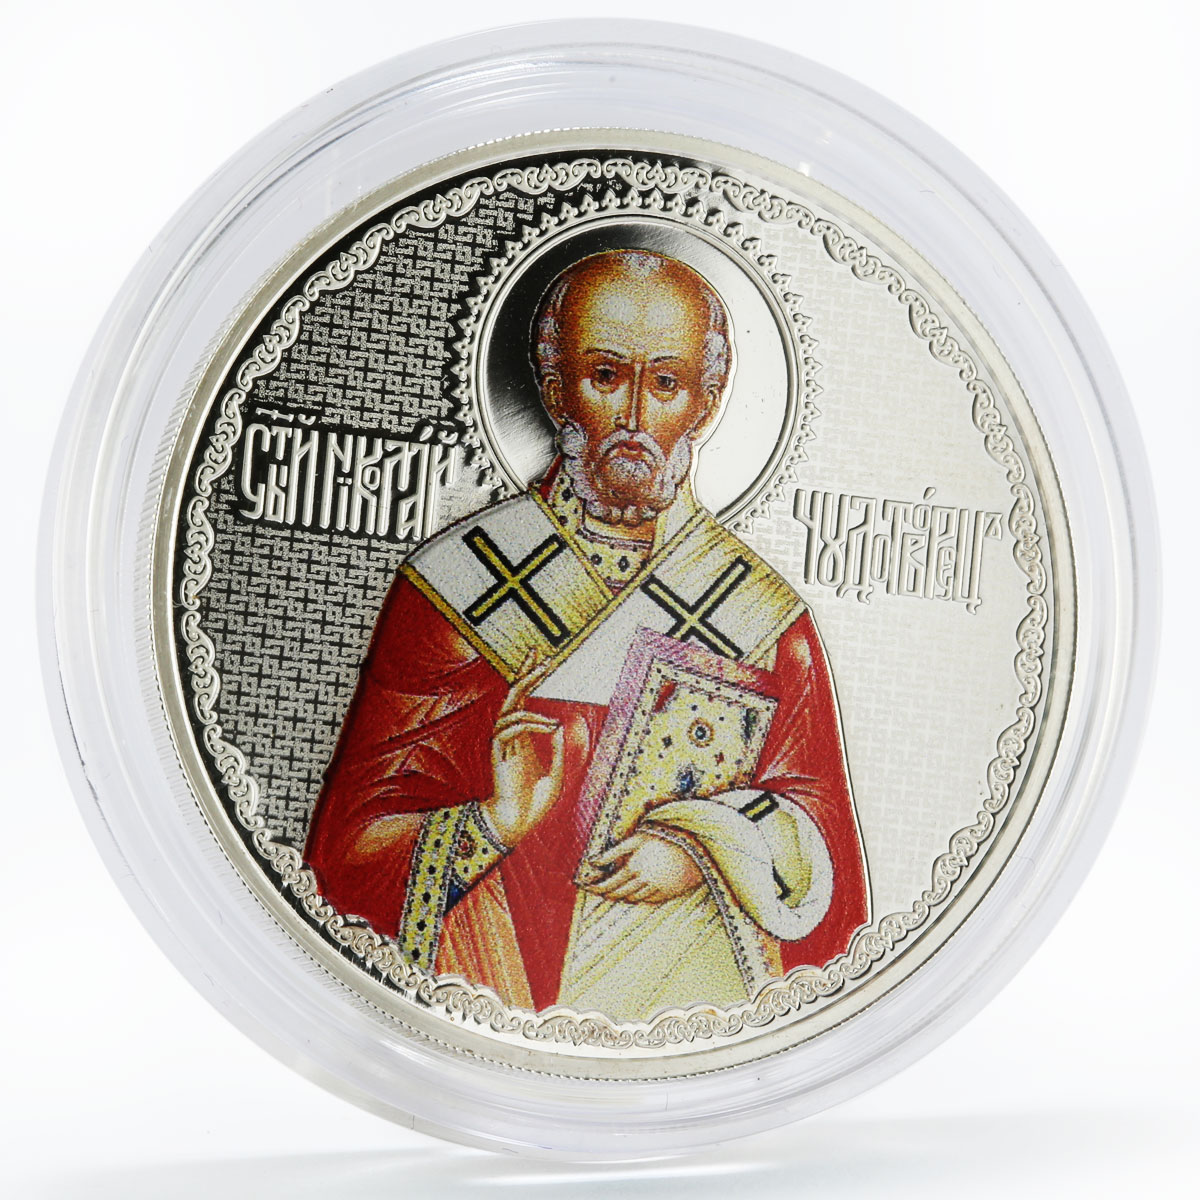 Laos 50000 kip Faith series St. Nicholas the Wonderworker silver coin 2017